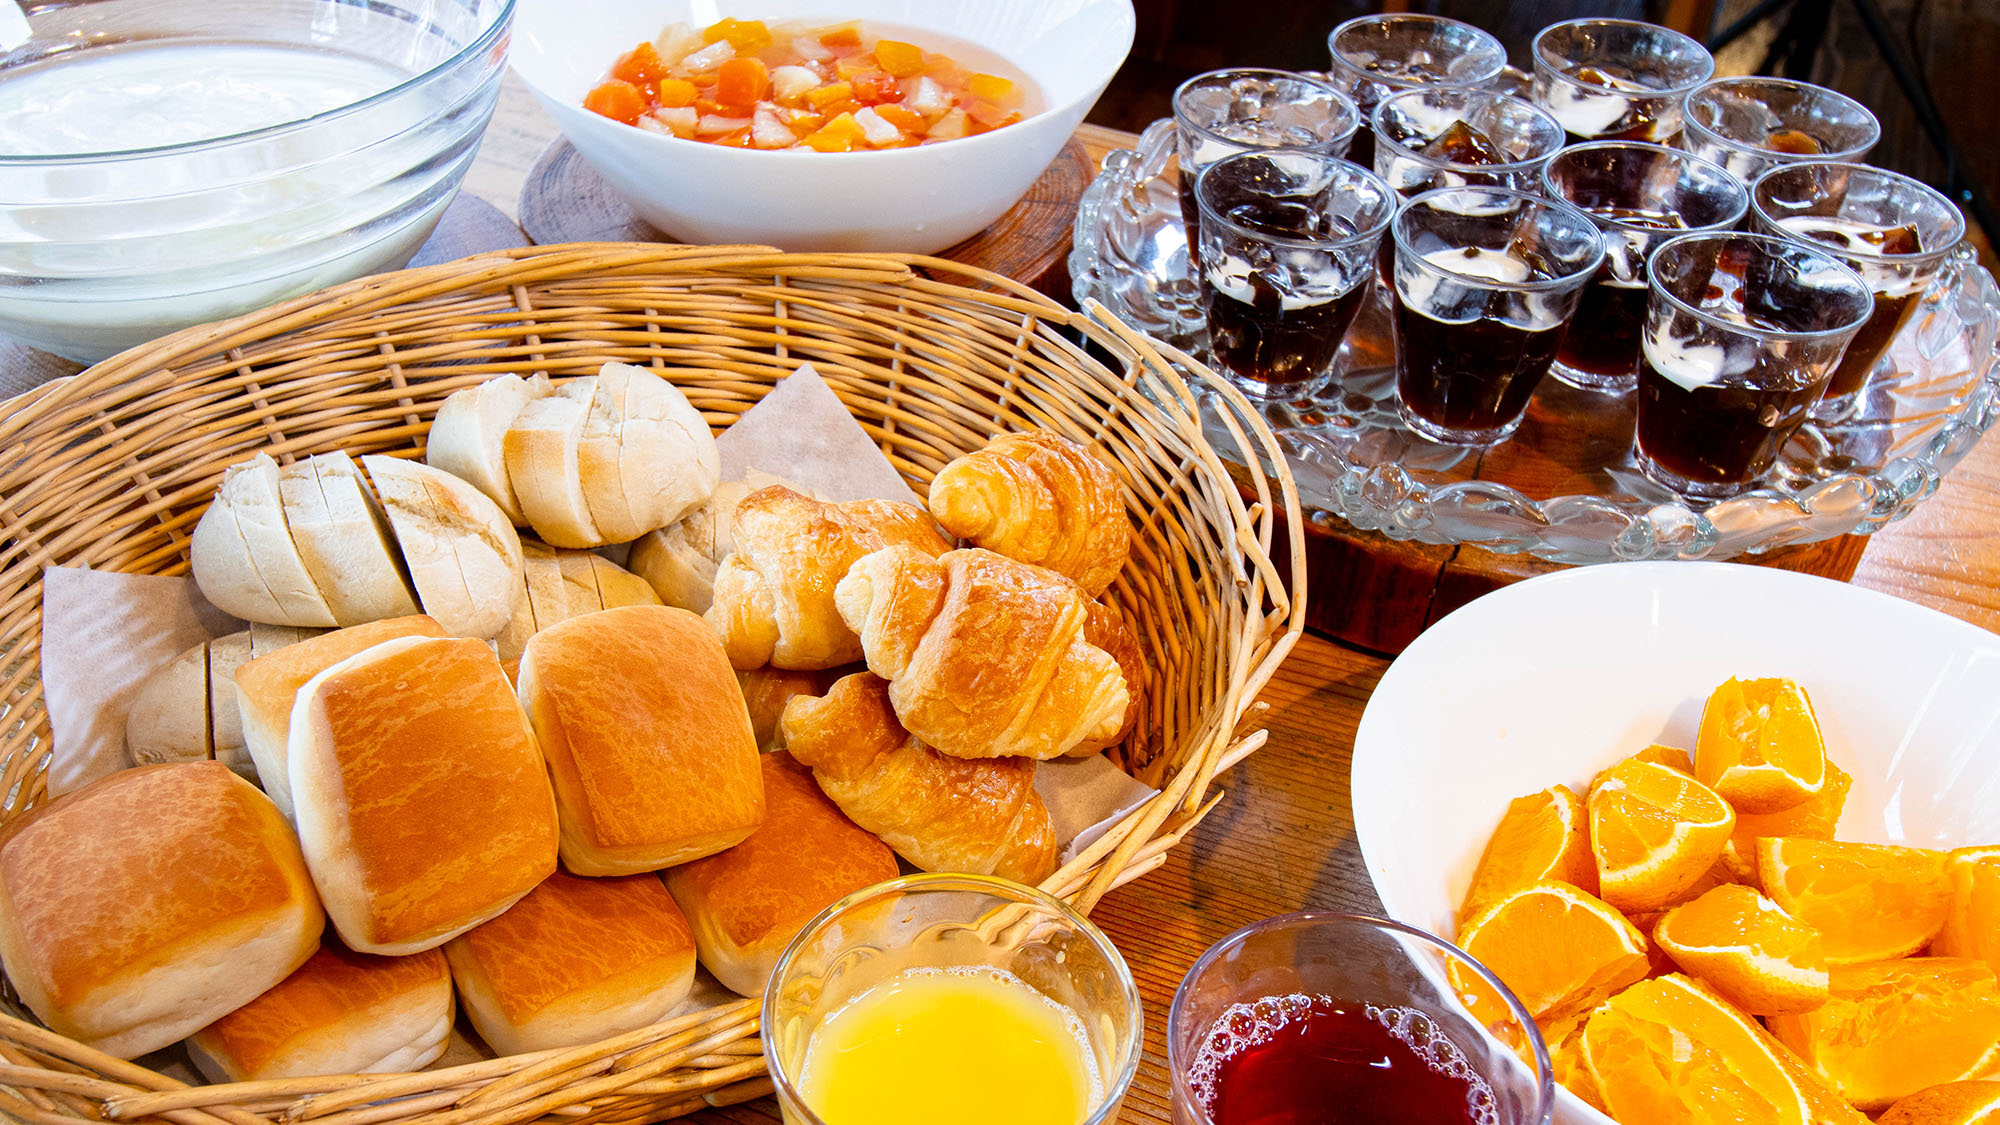 ◆朝食バイキング◆朝食の締めに新鮮な果物やデザートをどうぞ